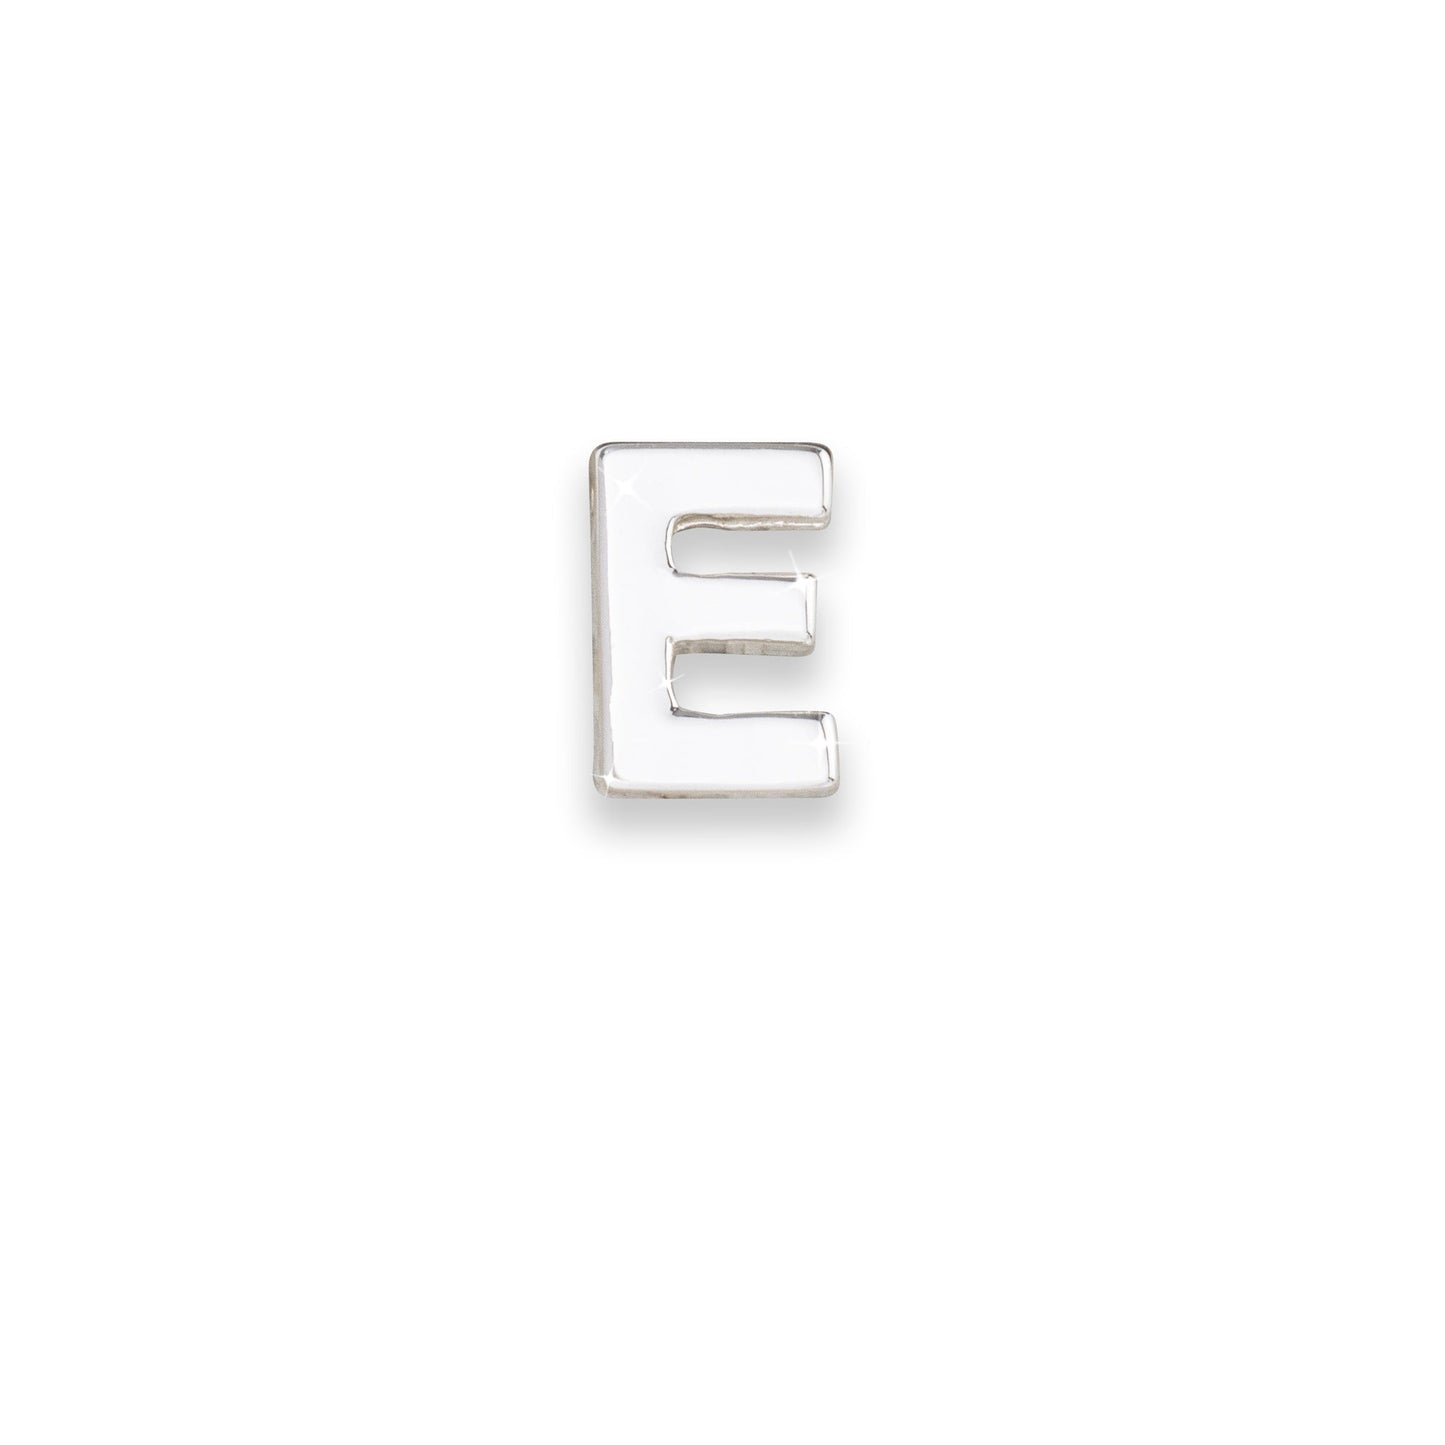 Silver letter E monogram charm for necklaces & bracelets